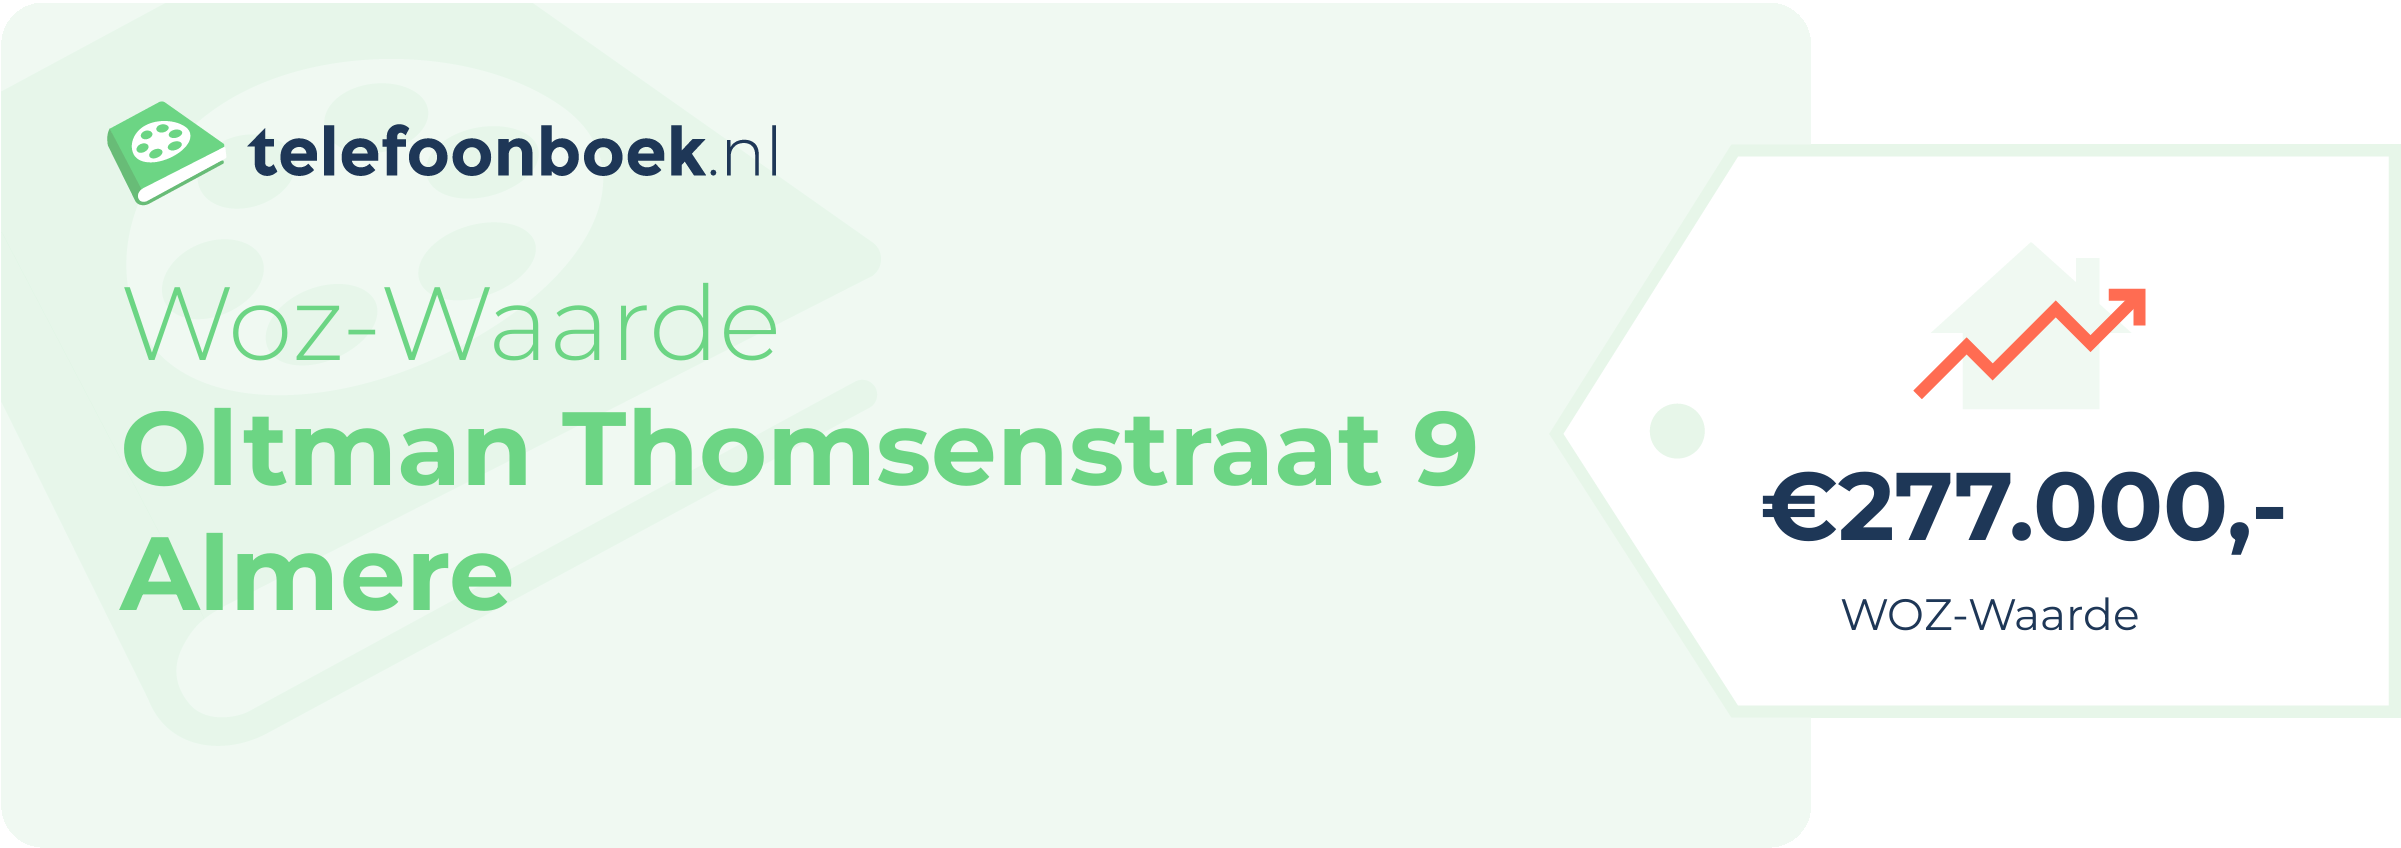 WOZ-waarde Oltman Thomsenstraat 9 Almere